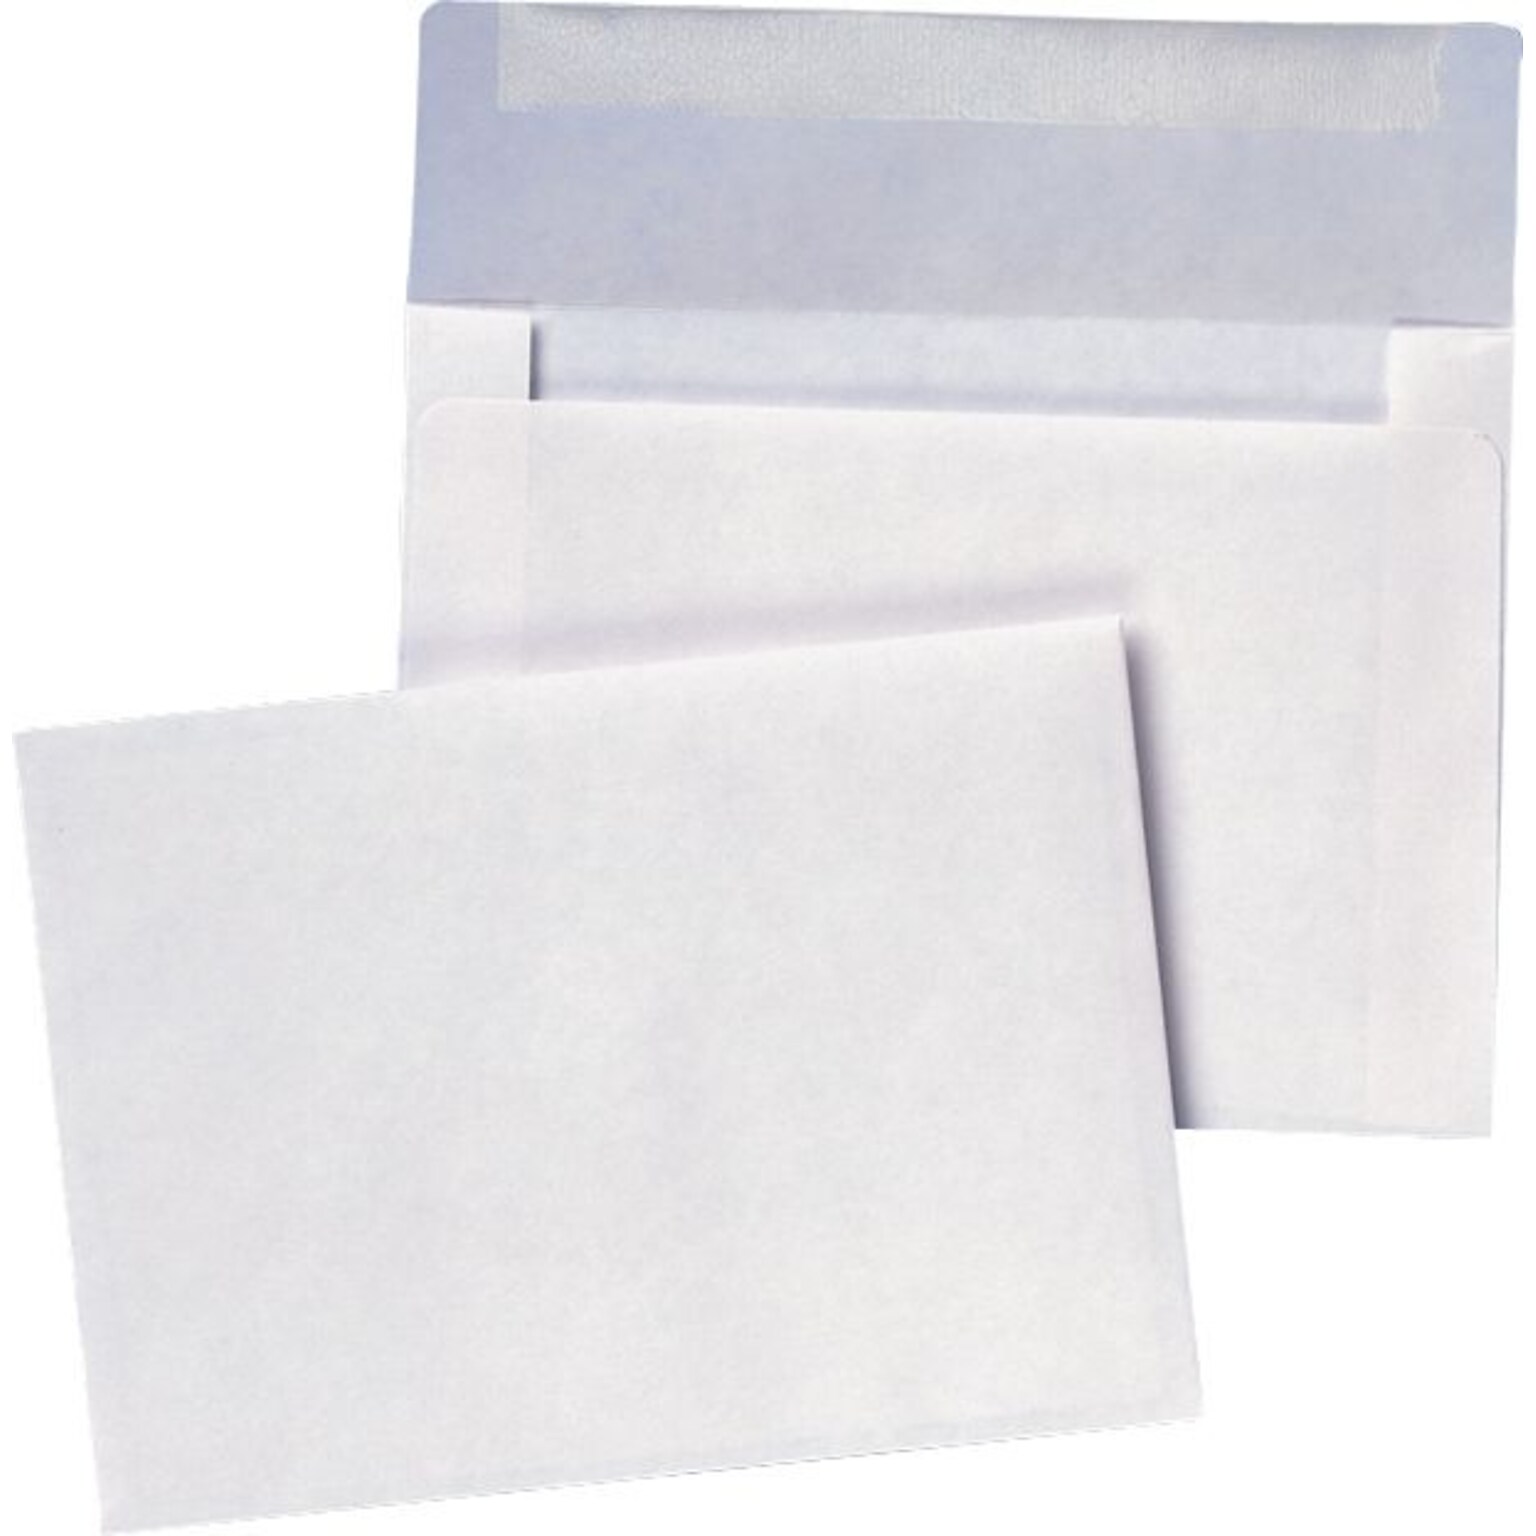 Quality Park Gummed Invitation Envelopes, 4 3/8 x 5 3/4, White 100/Bx